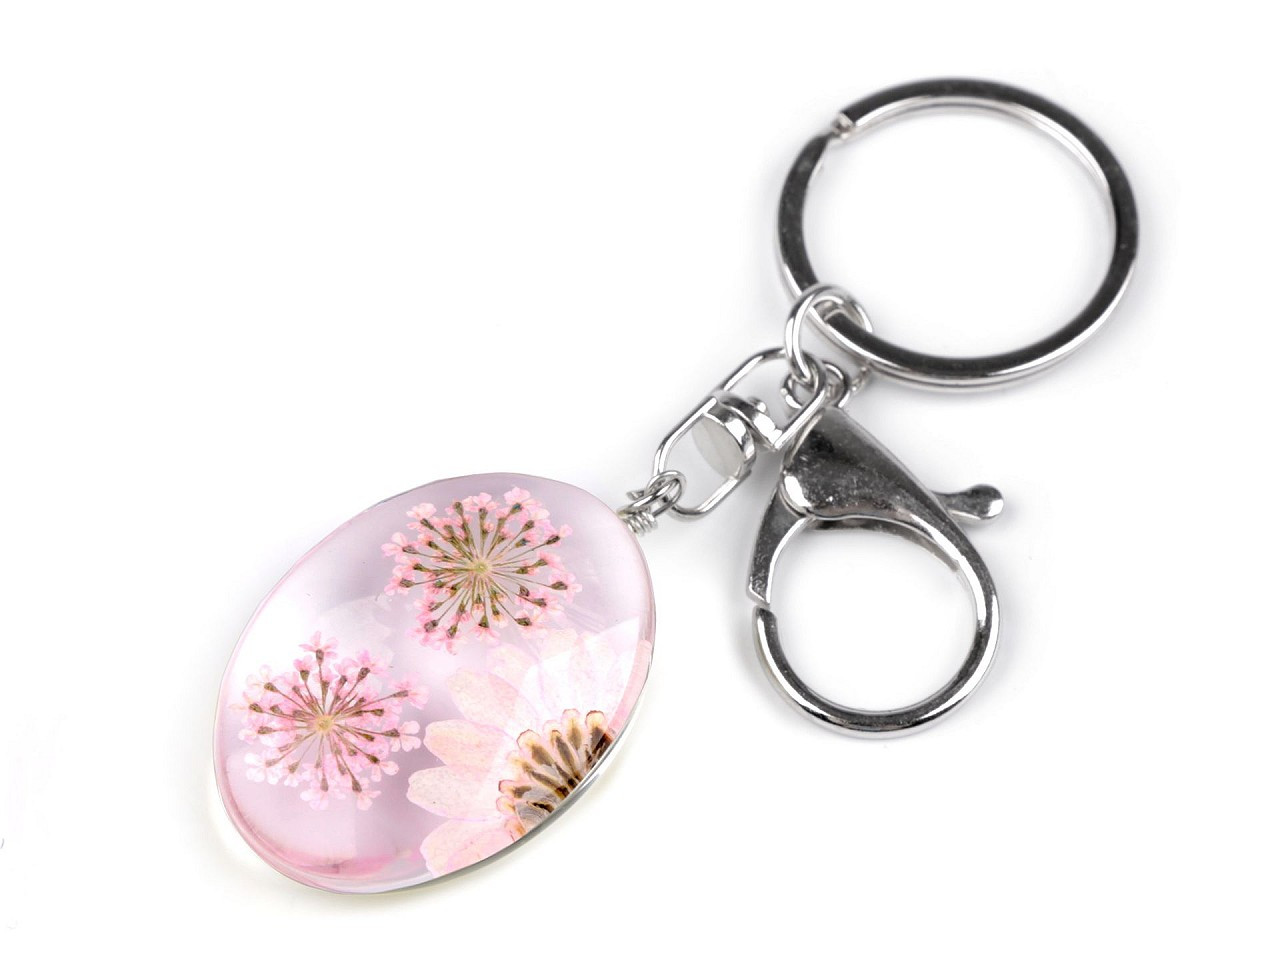 Přívěsek na klíče / kabelku lisované květy v oválu, barva 2 pudrová